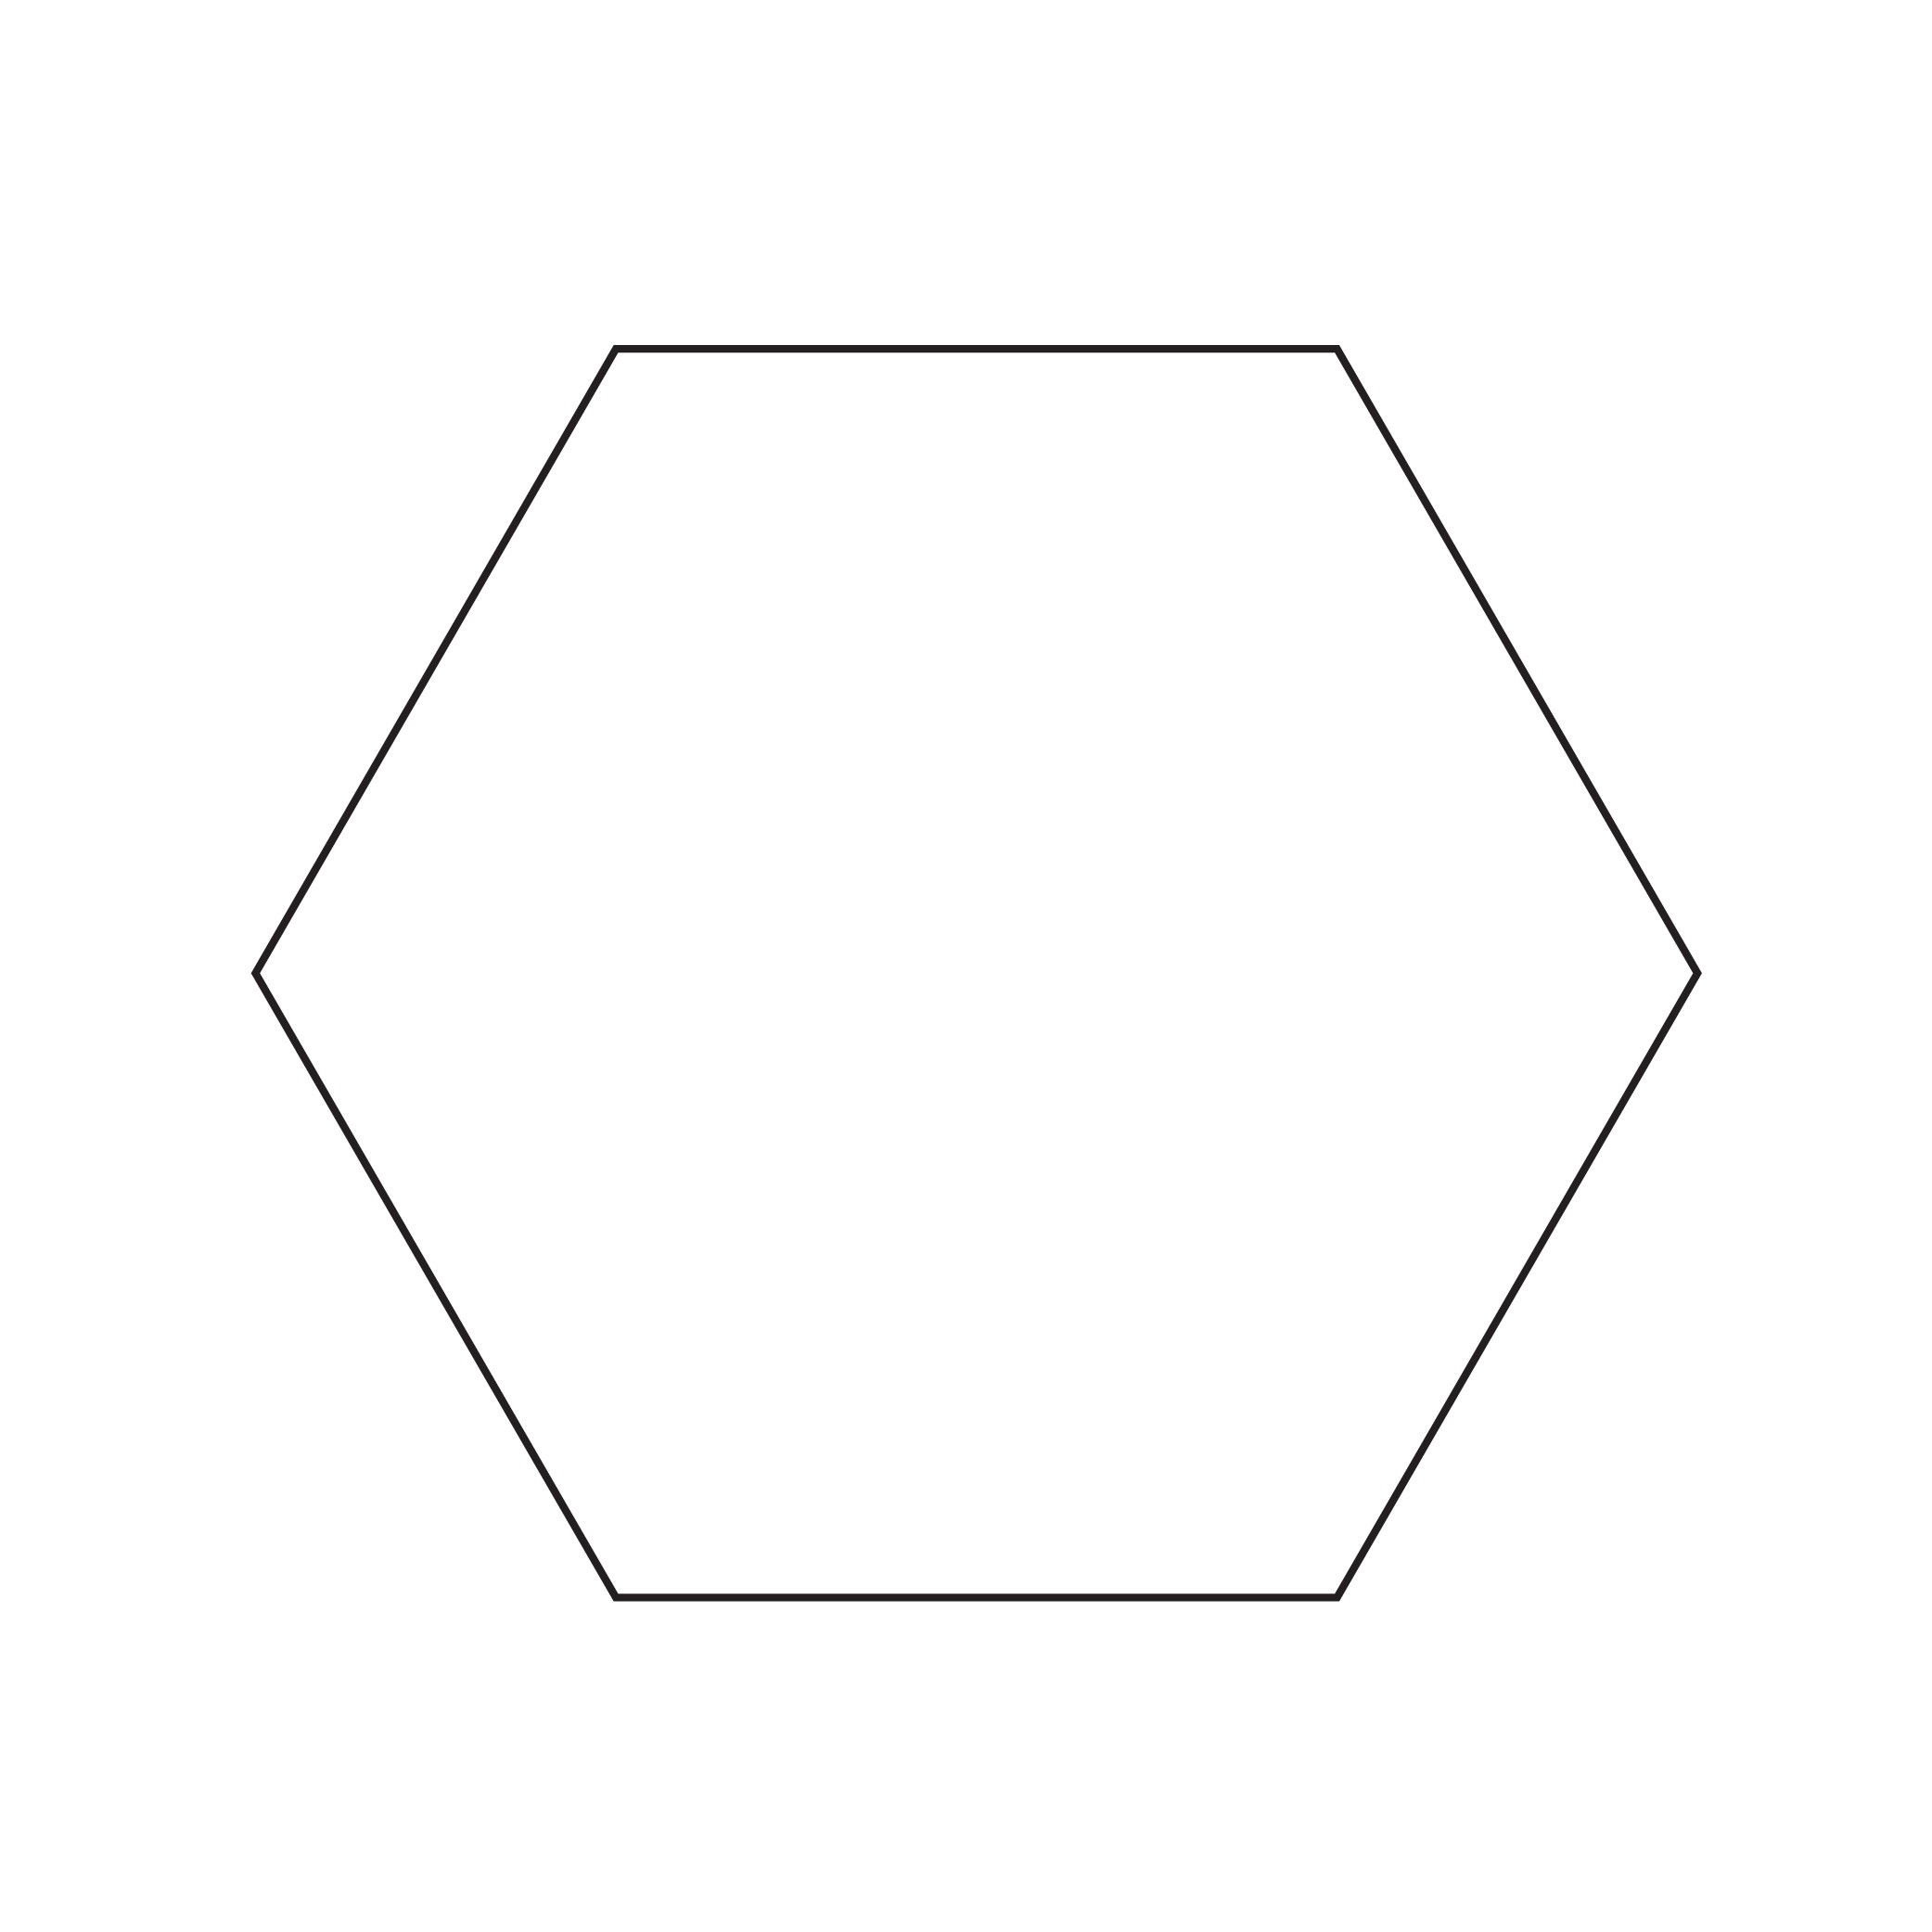 3in hexagon Template